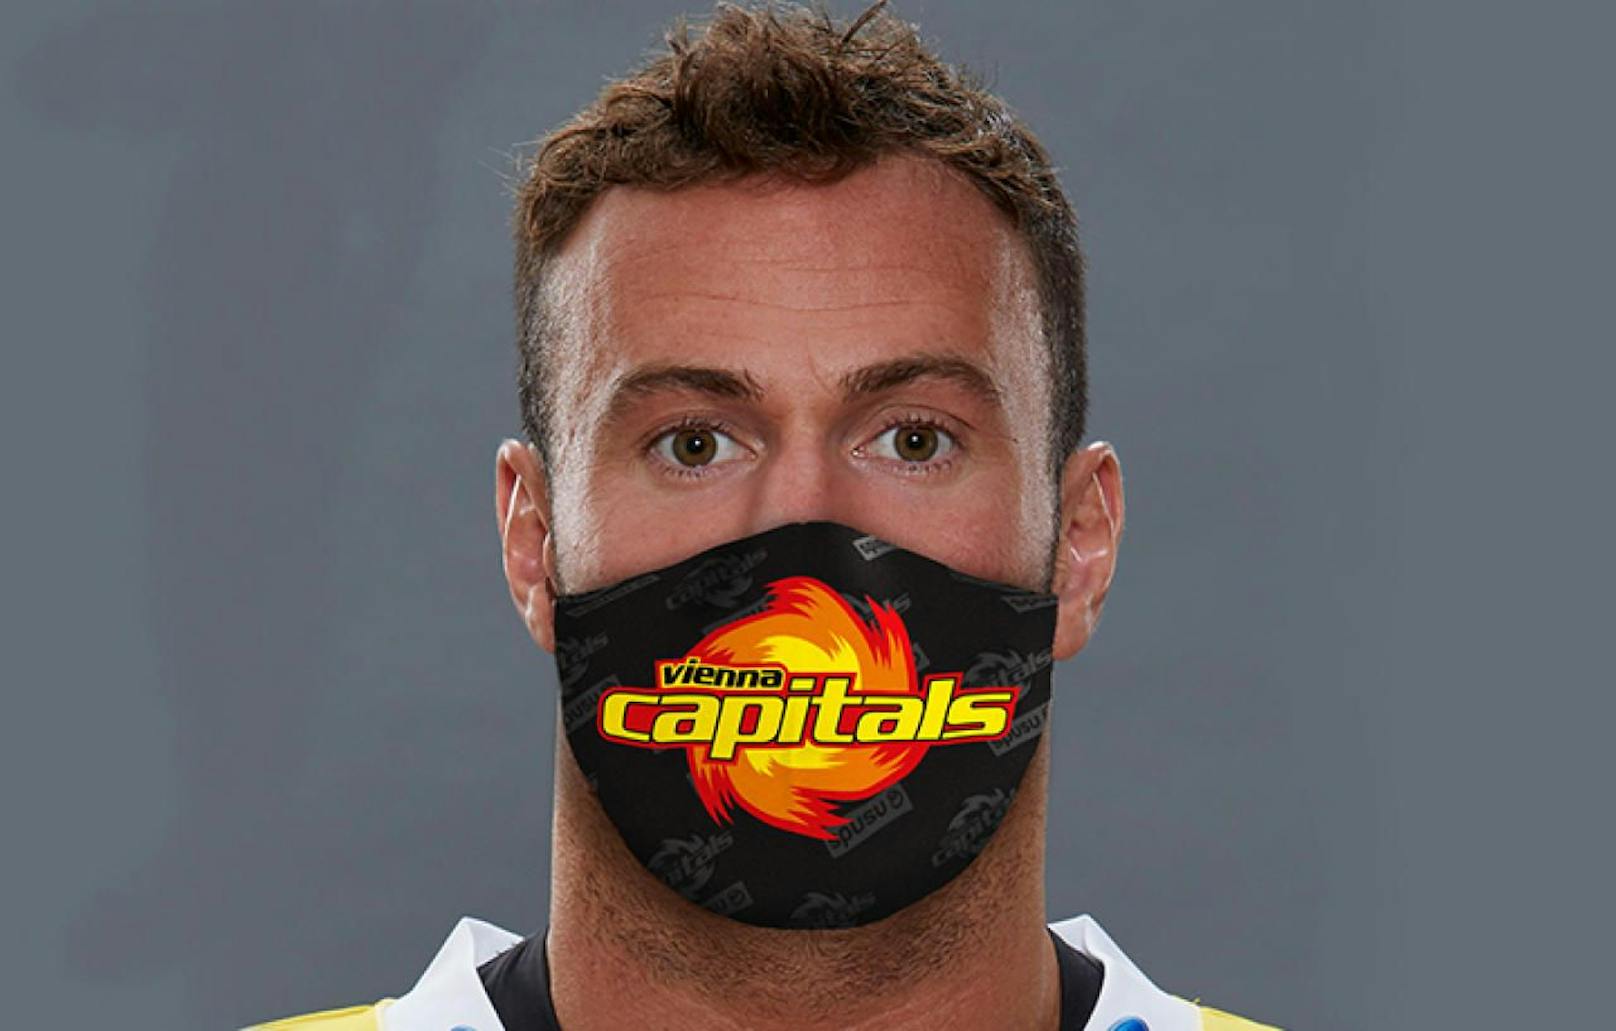 Caps-Crack Rafael Rotter zeigt die Schutzmaske im Design der Wiener Eishockey-Cracks